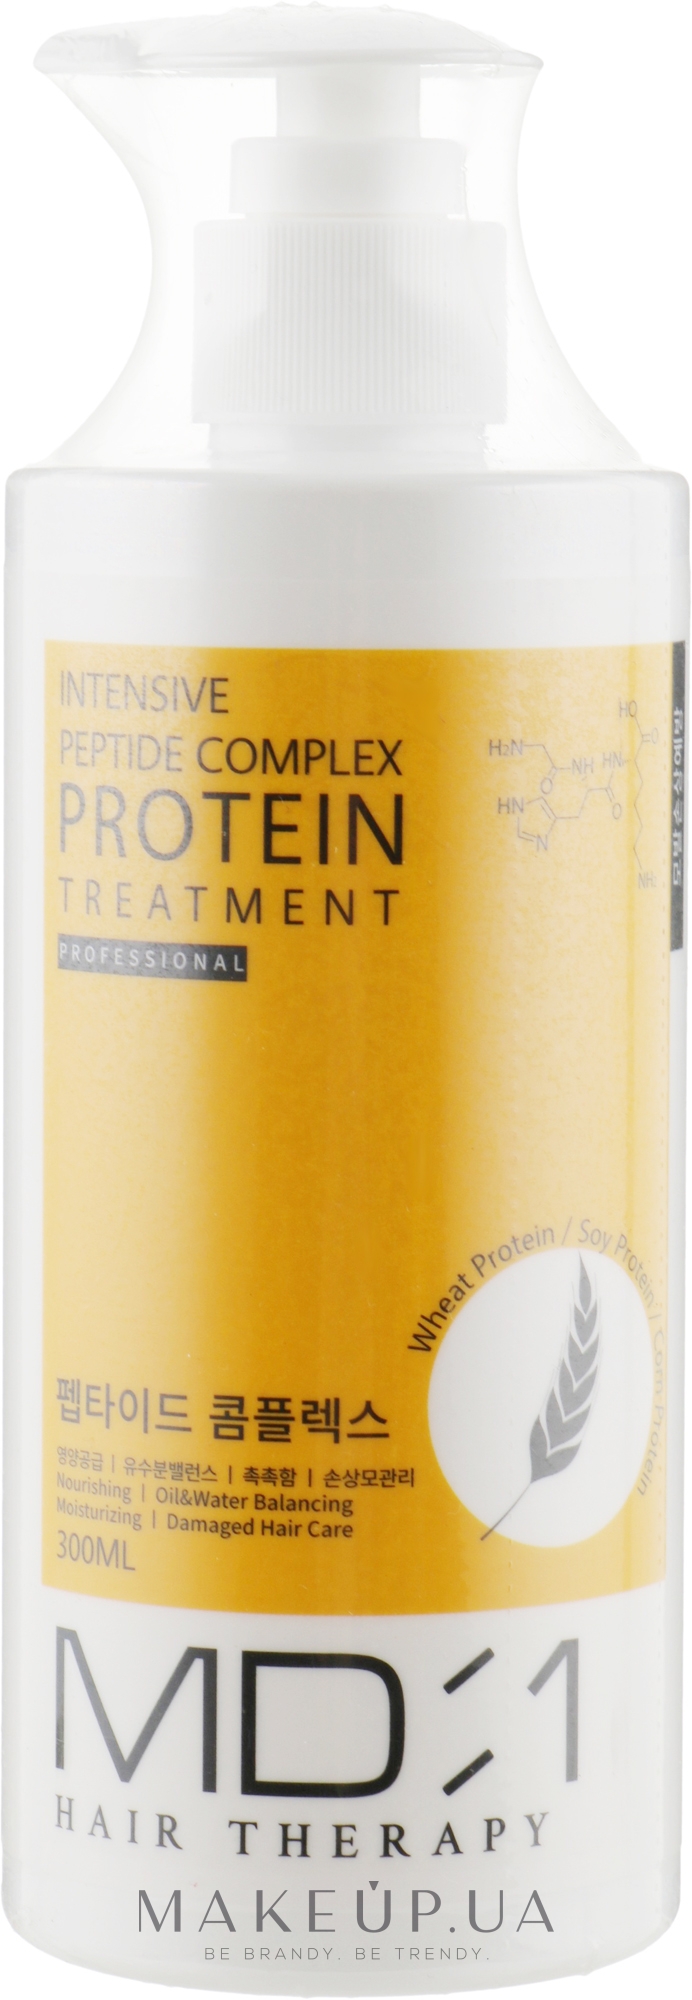 Маска-кондиционер для волос с протеином - Med B MD:1 Intensive Peptide Complex Protein Treatment — фото 300ml